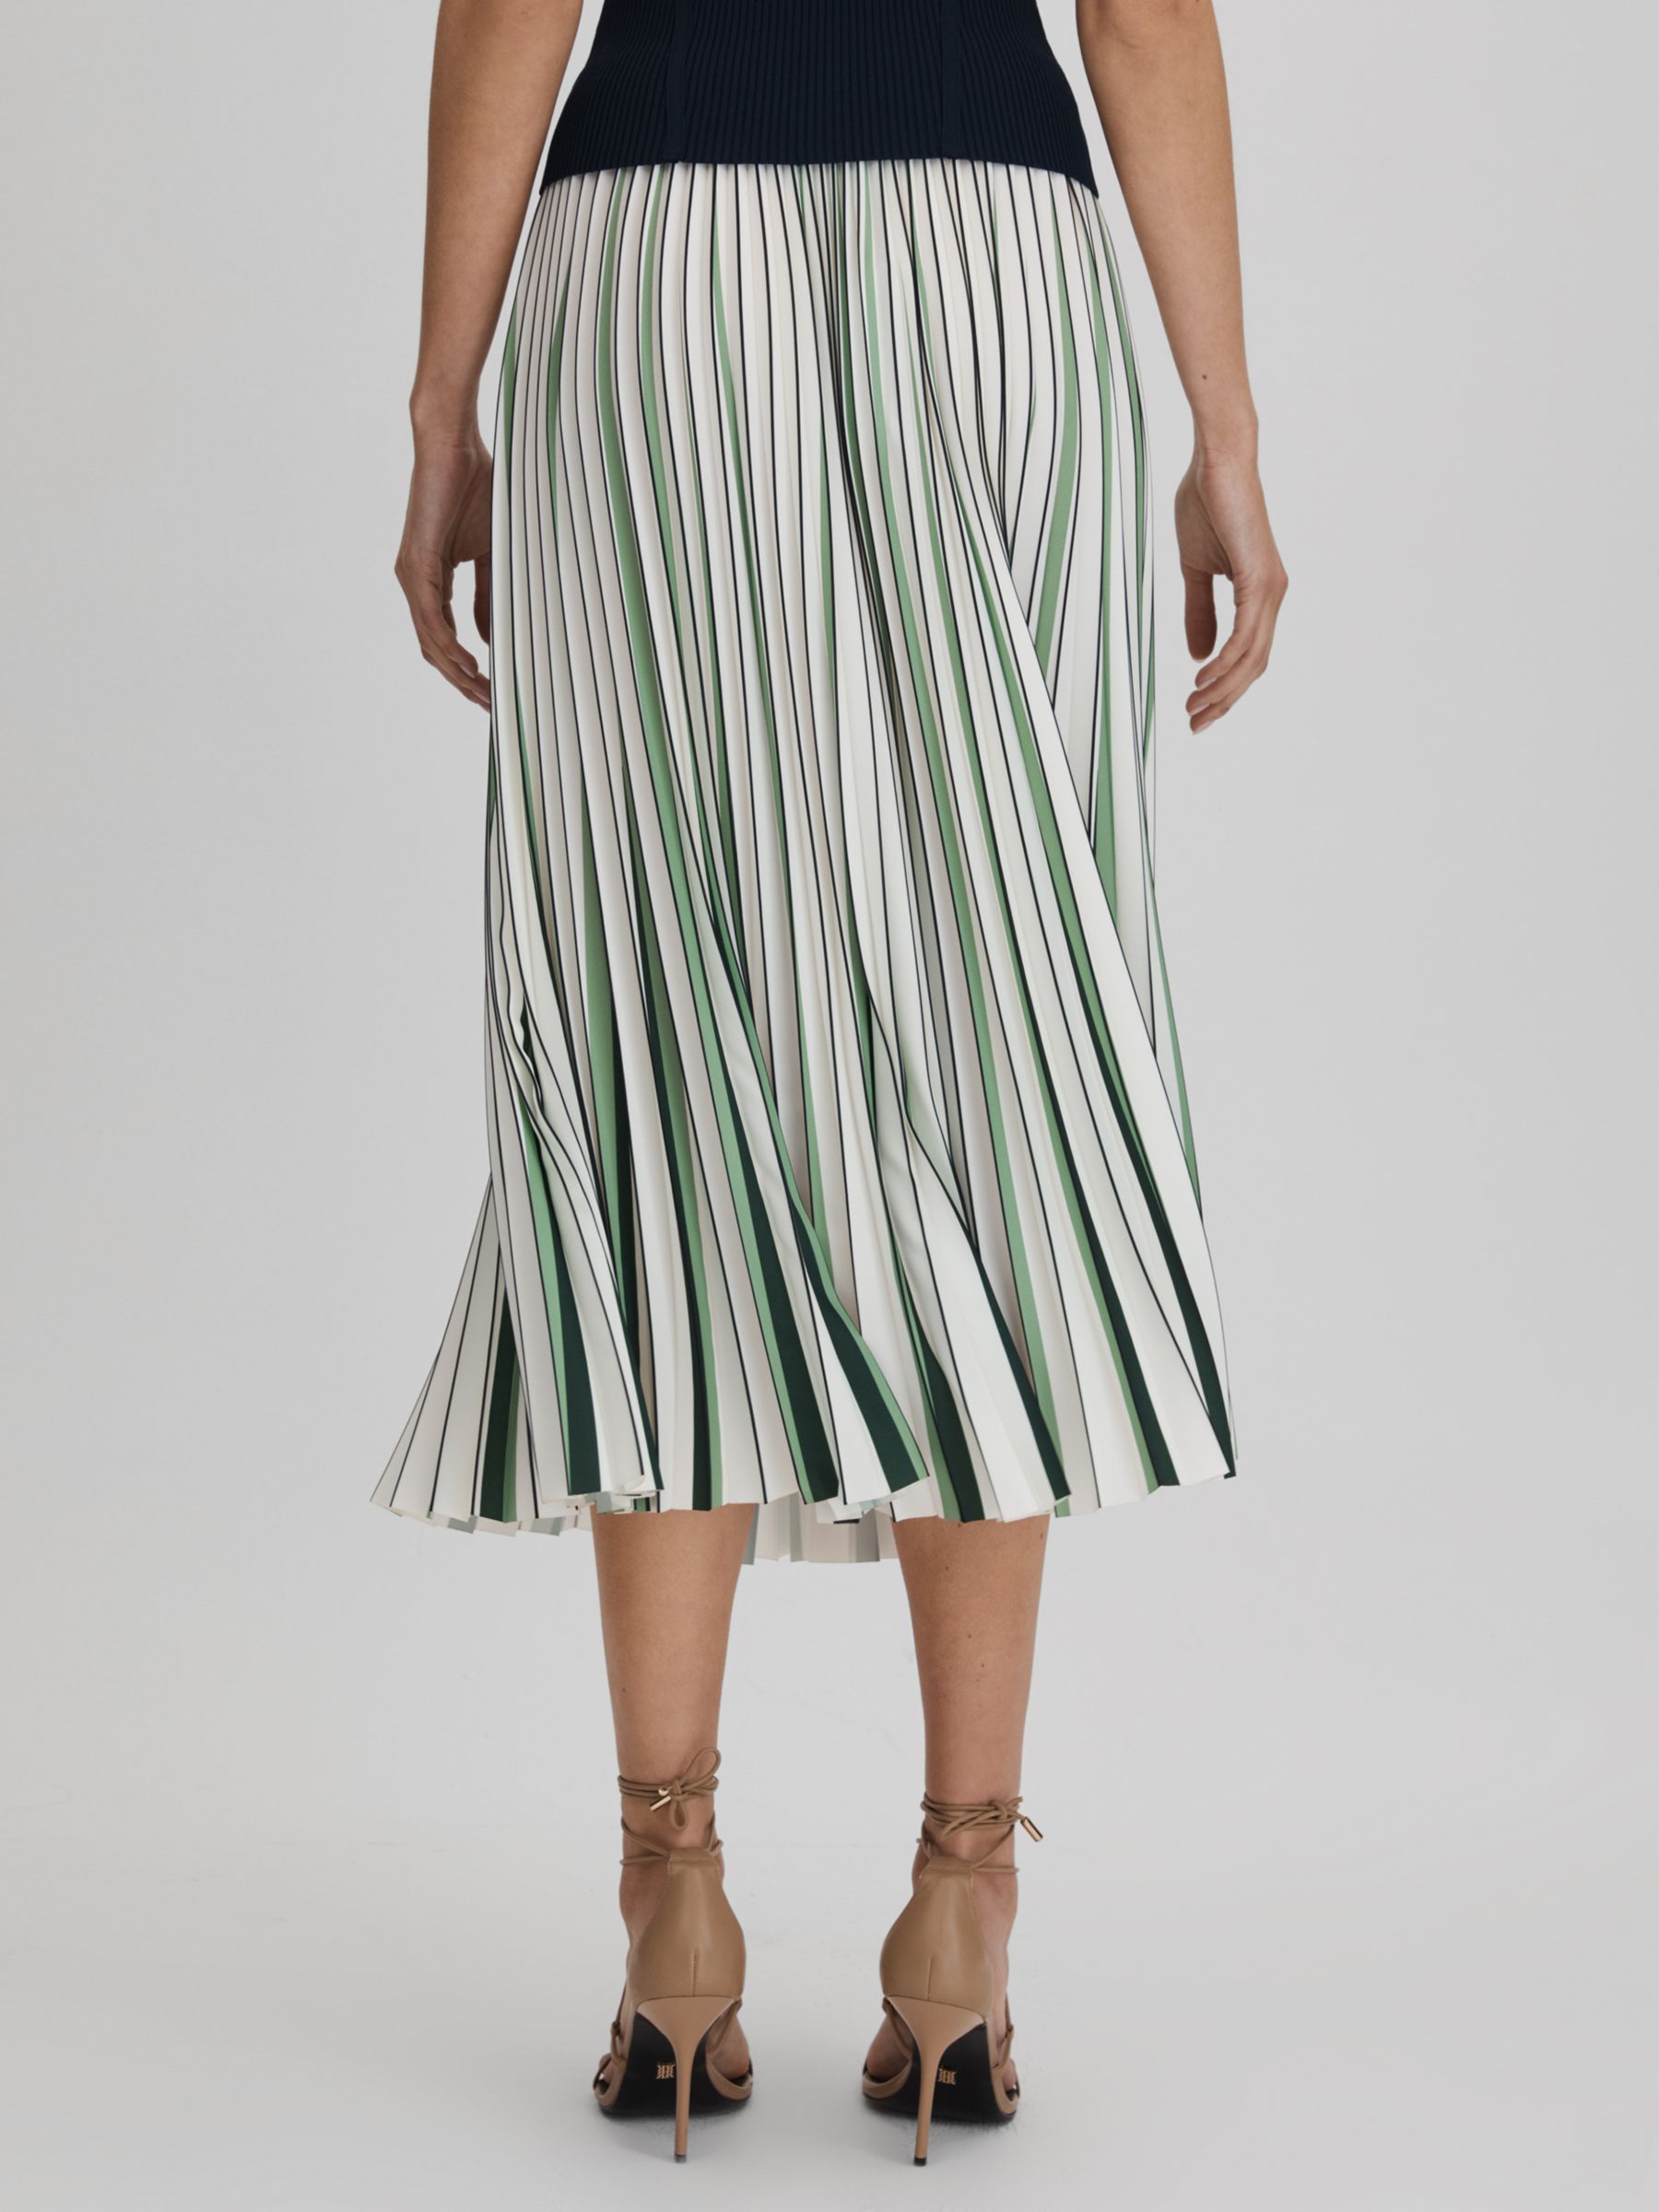 Reiss Saige Striped Pleated Midi Skirt, Cream/Multi, 16